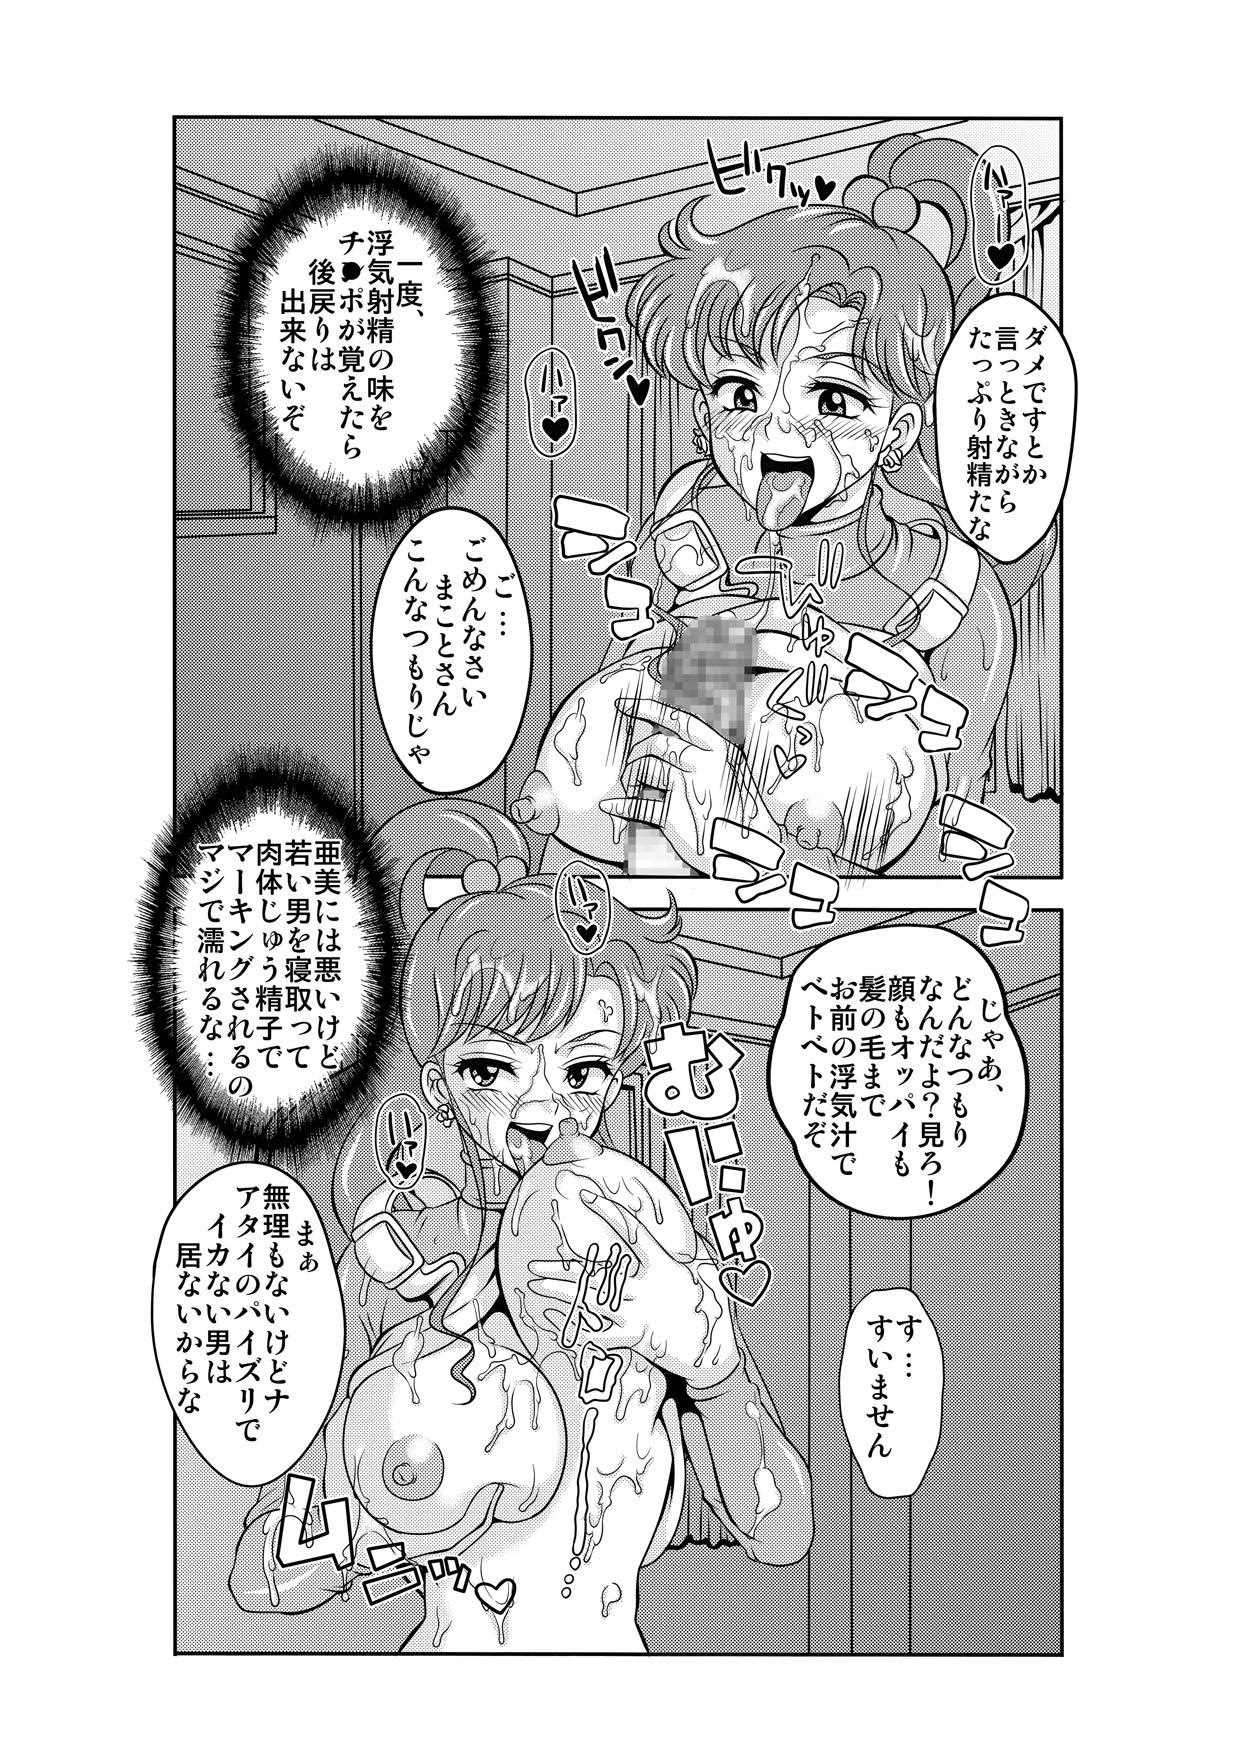 Hot Netori Netorare Toshiue Cosplayer-tachi no Yuuwaku - Sailor moon Costume - Page 10